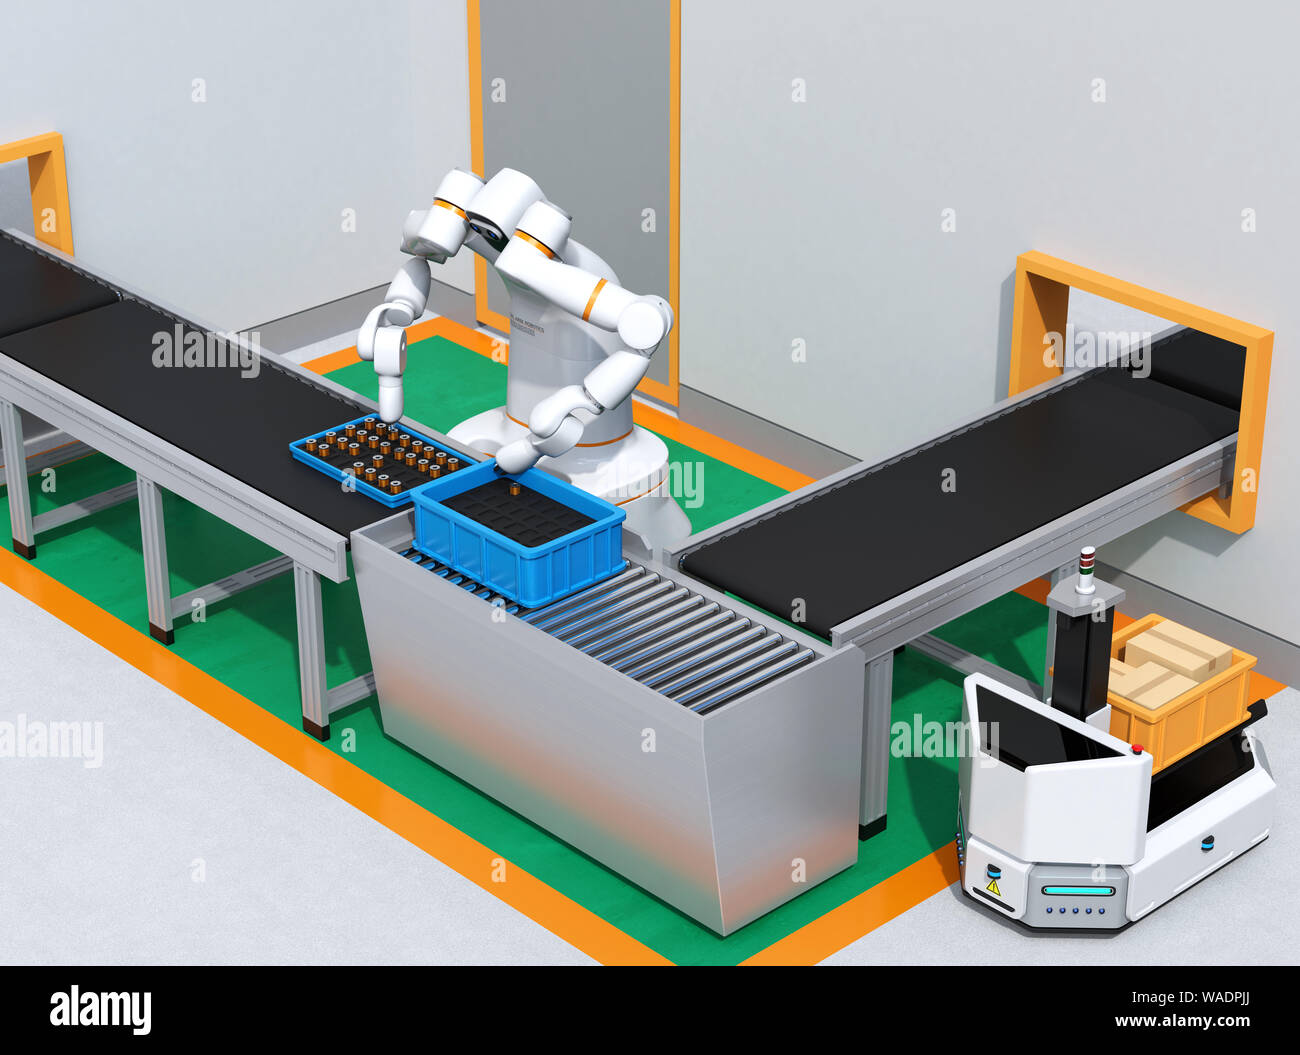 Dual-Roboter des Motors der Spulen in der Zelle - Produktion. Kollaborative Roboter Konzept. Original Design. 3D-Bild. Stockfoto